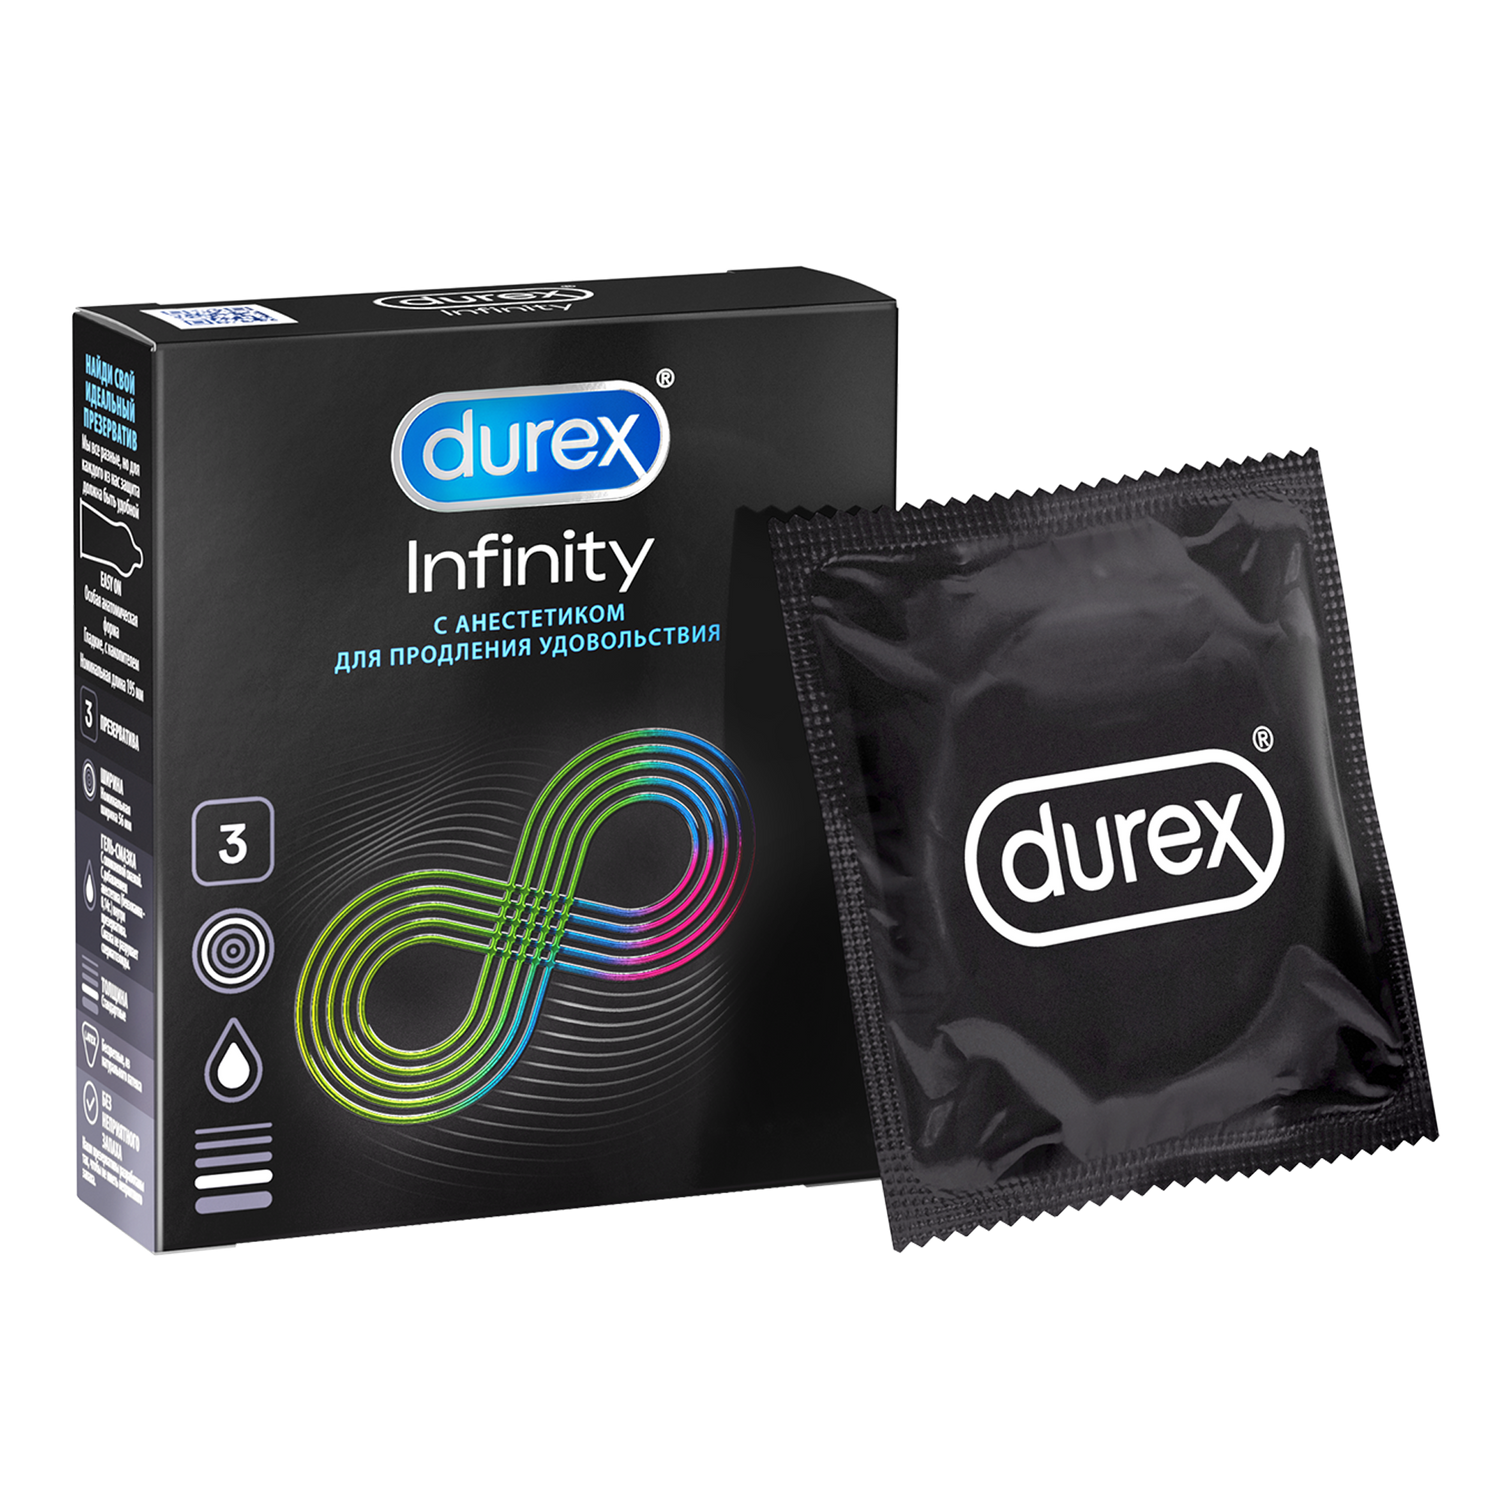 Презервативы Durex Infinity с анестетиком гладкие, 3 шт. презервативы durex infinity гладкие с анестетиком 12 шт